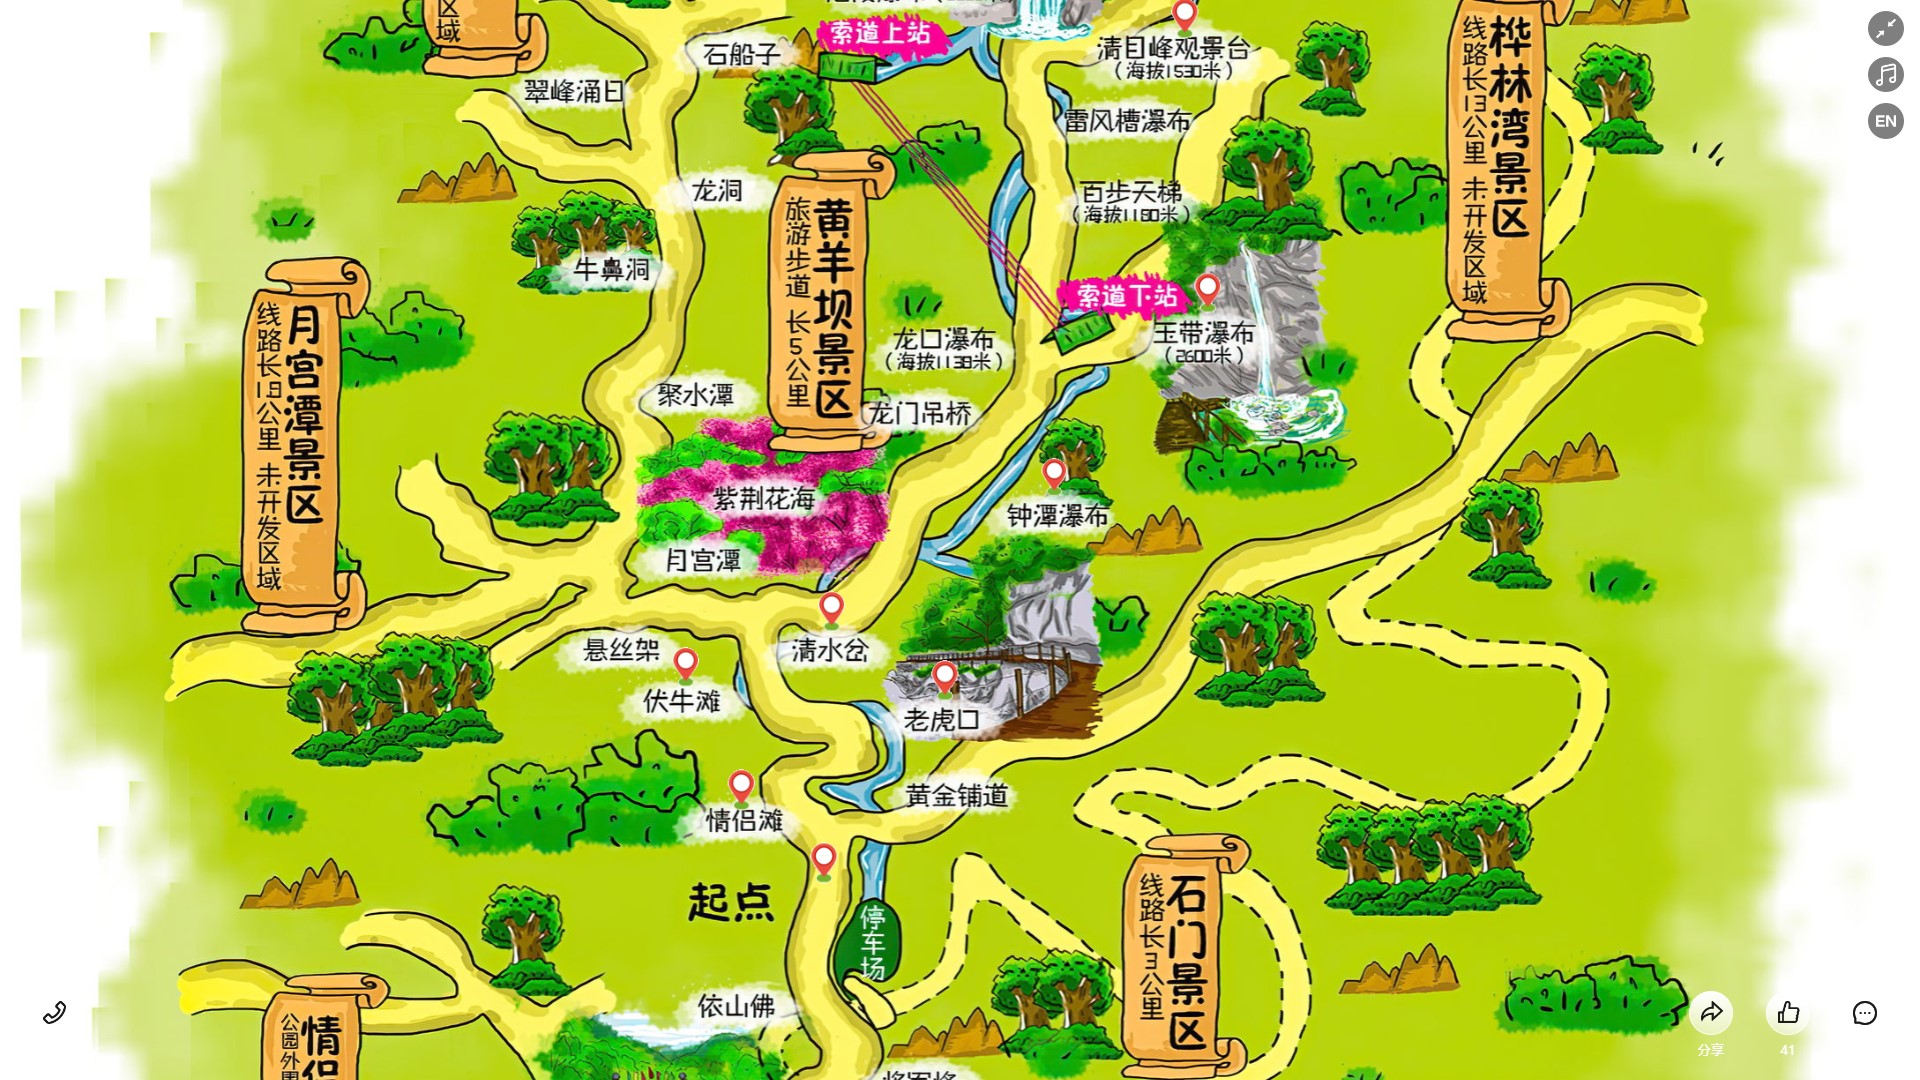 光坡镇景区导览系统